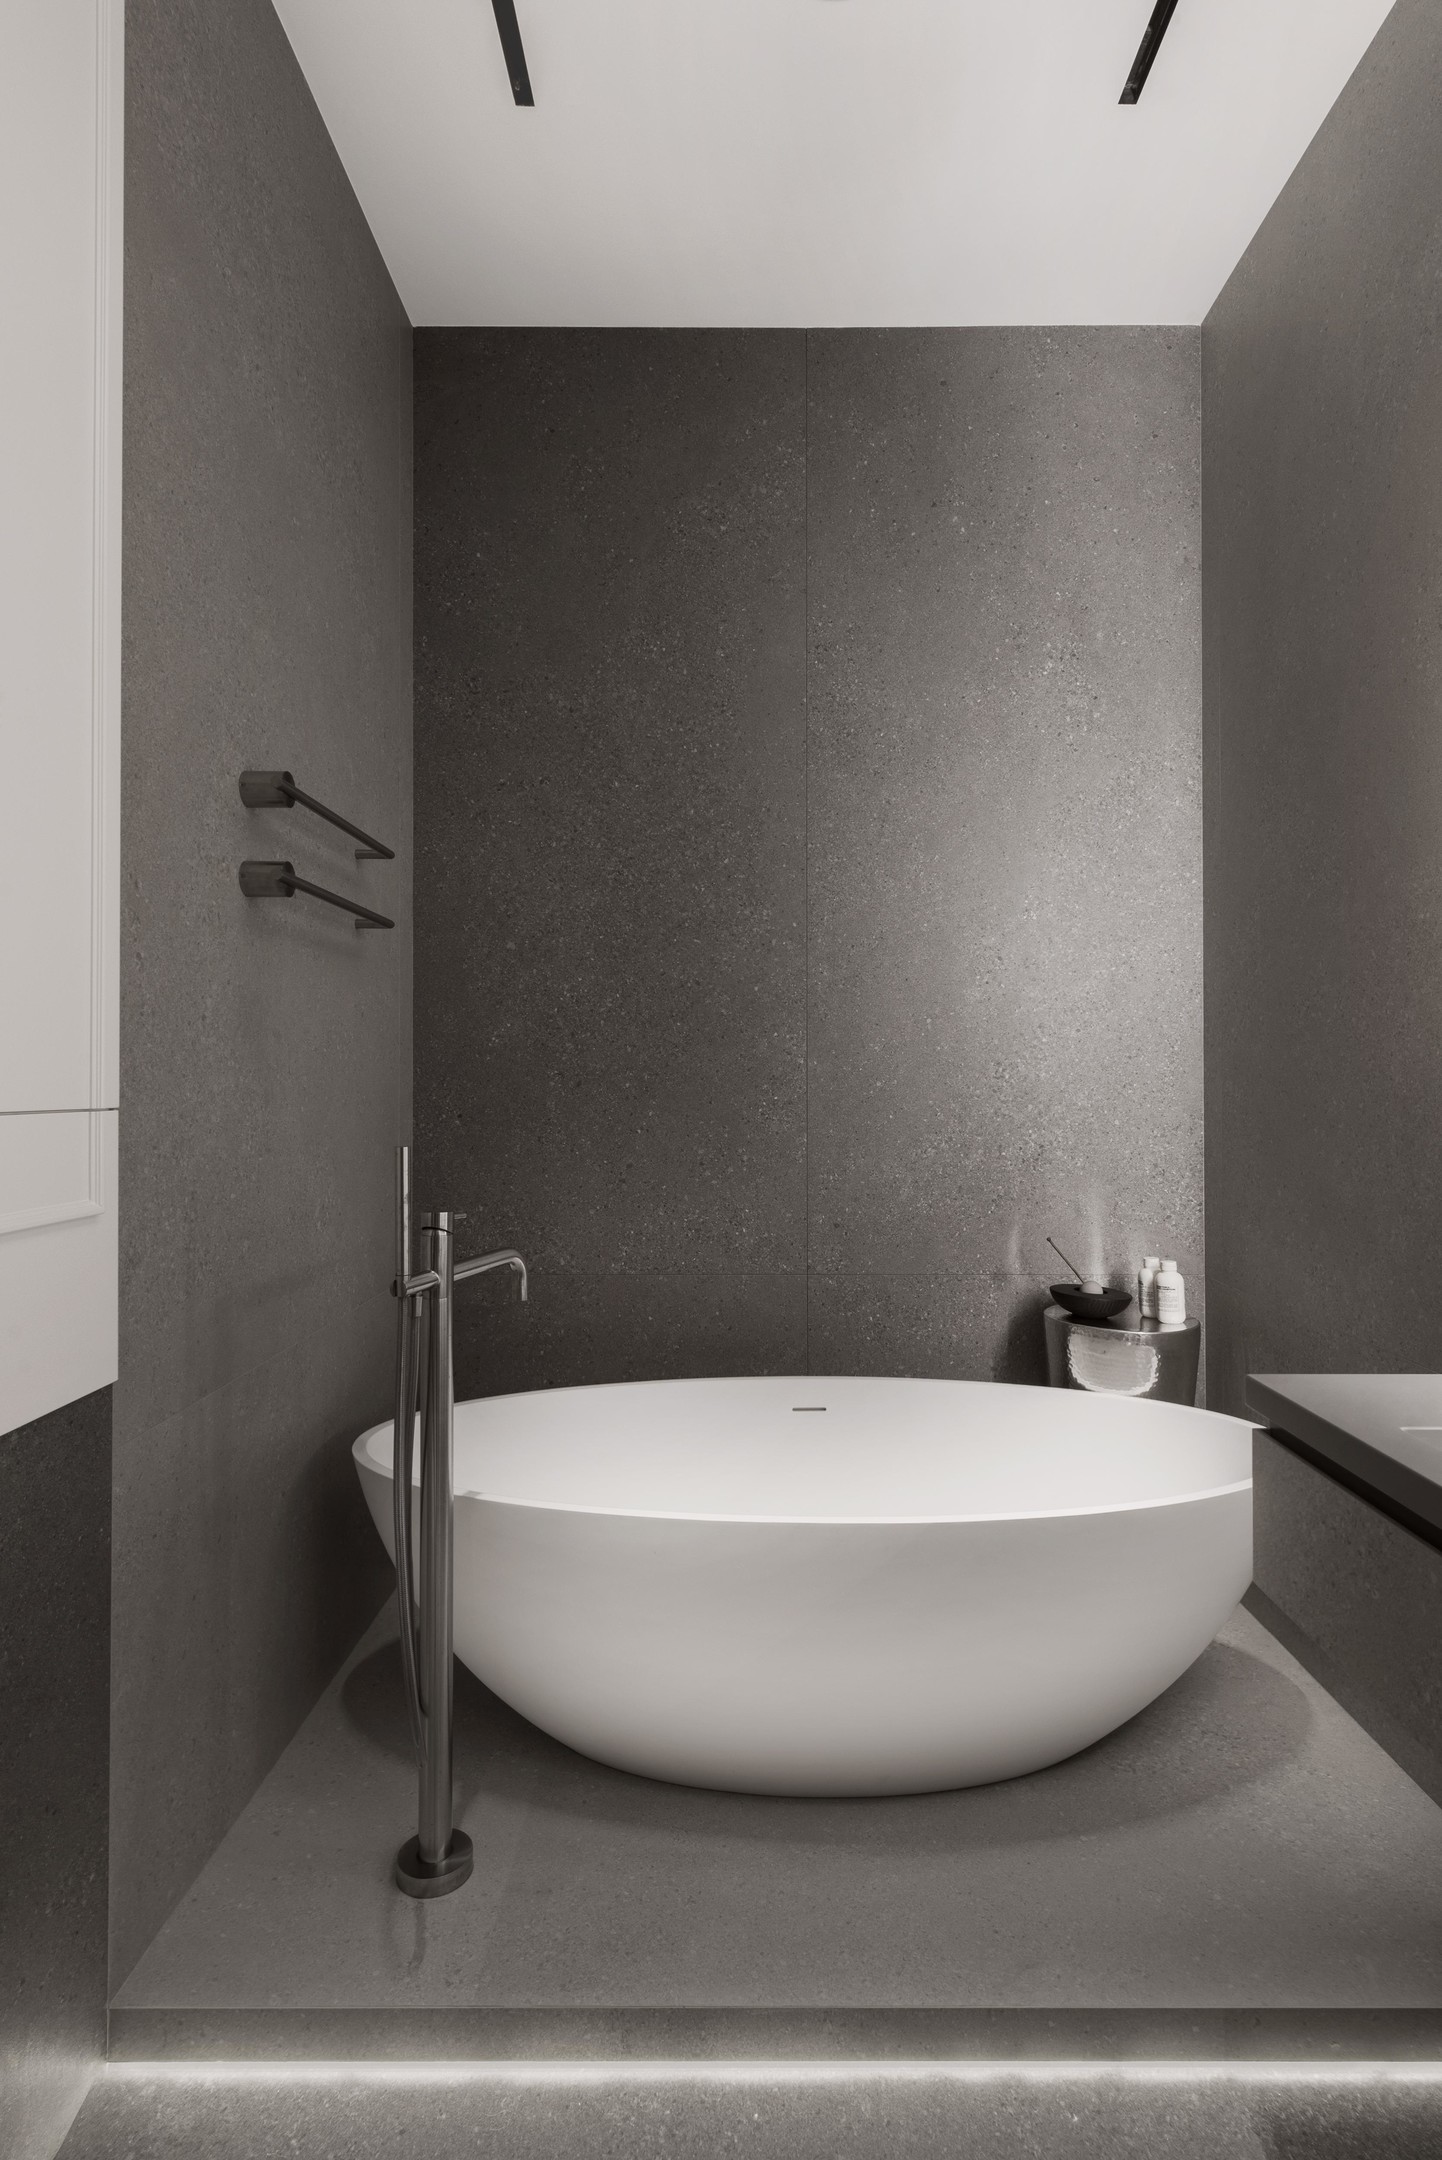 Phòng tắm này có gì? Một chiếc bồn tắm bằng sứ trắng với hình tròn duyên dáng, vòi nước, chiếc bàn phụ nhỏ nhắn và 2 thanh treo khăn tắm gắn tường. Hoàn hảo cho những không gian 'khiêm tốn' về diện tích!